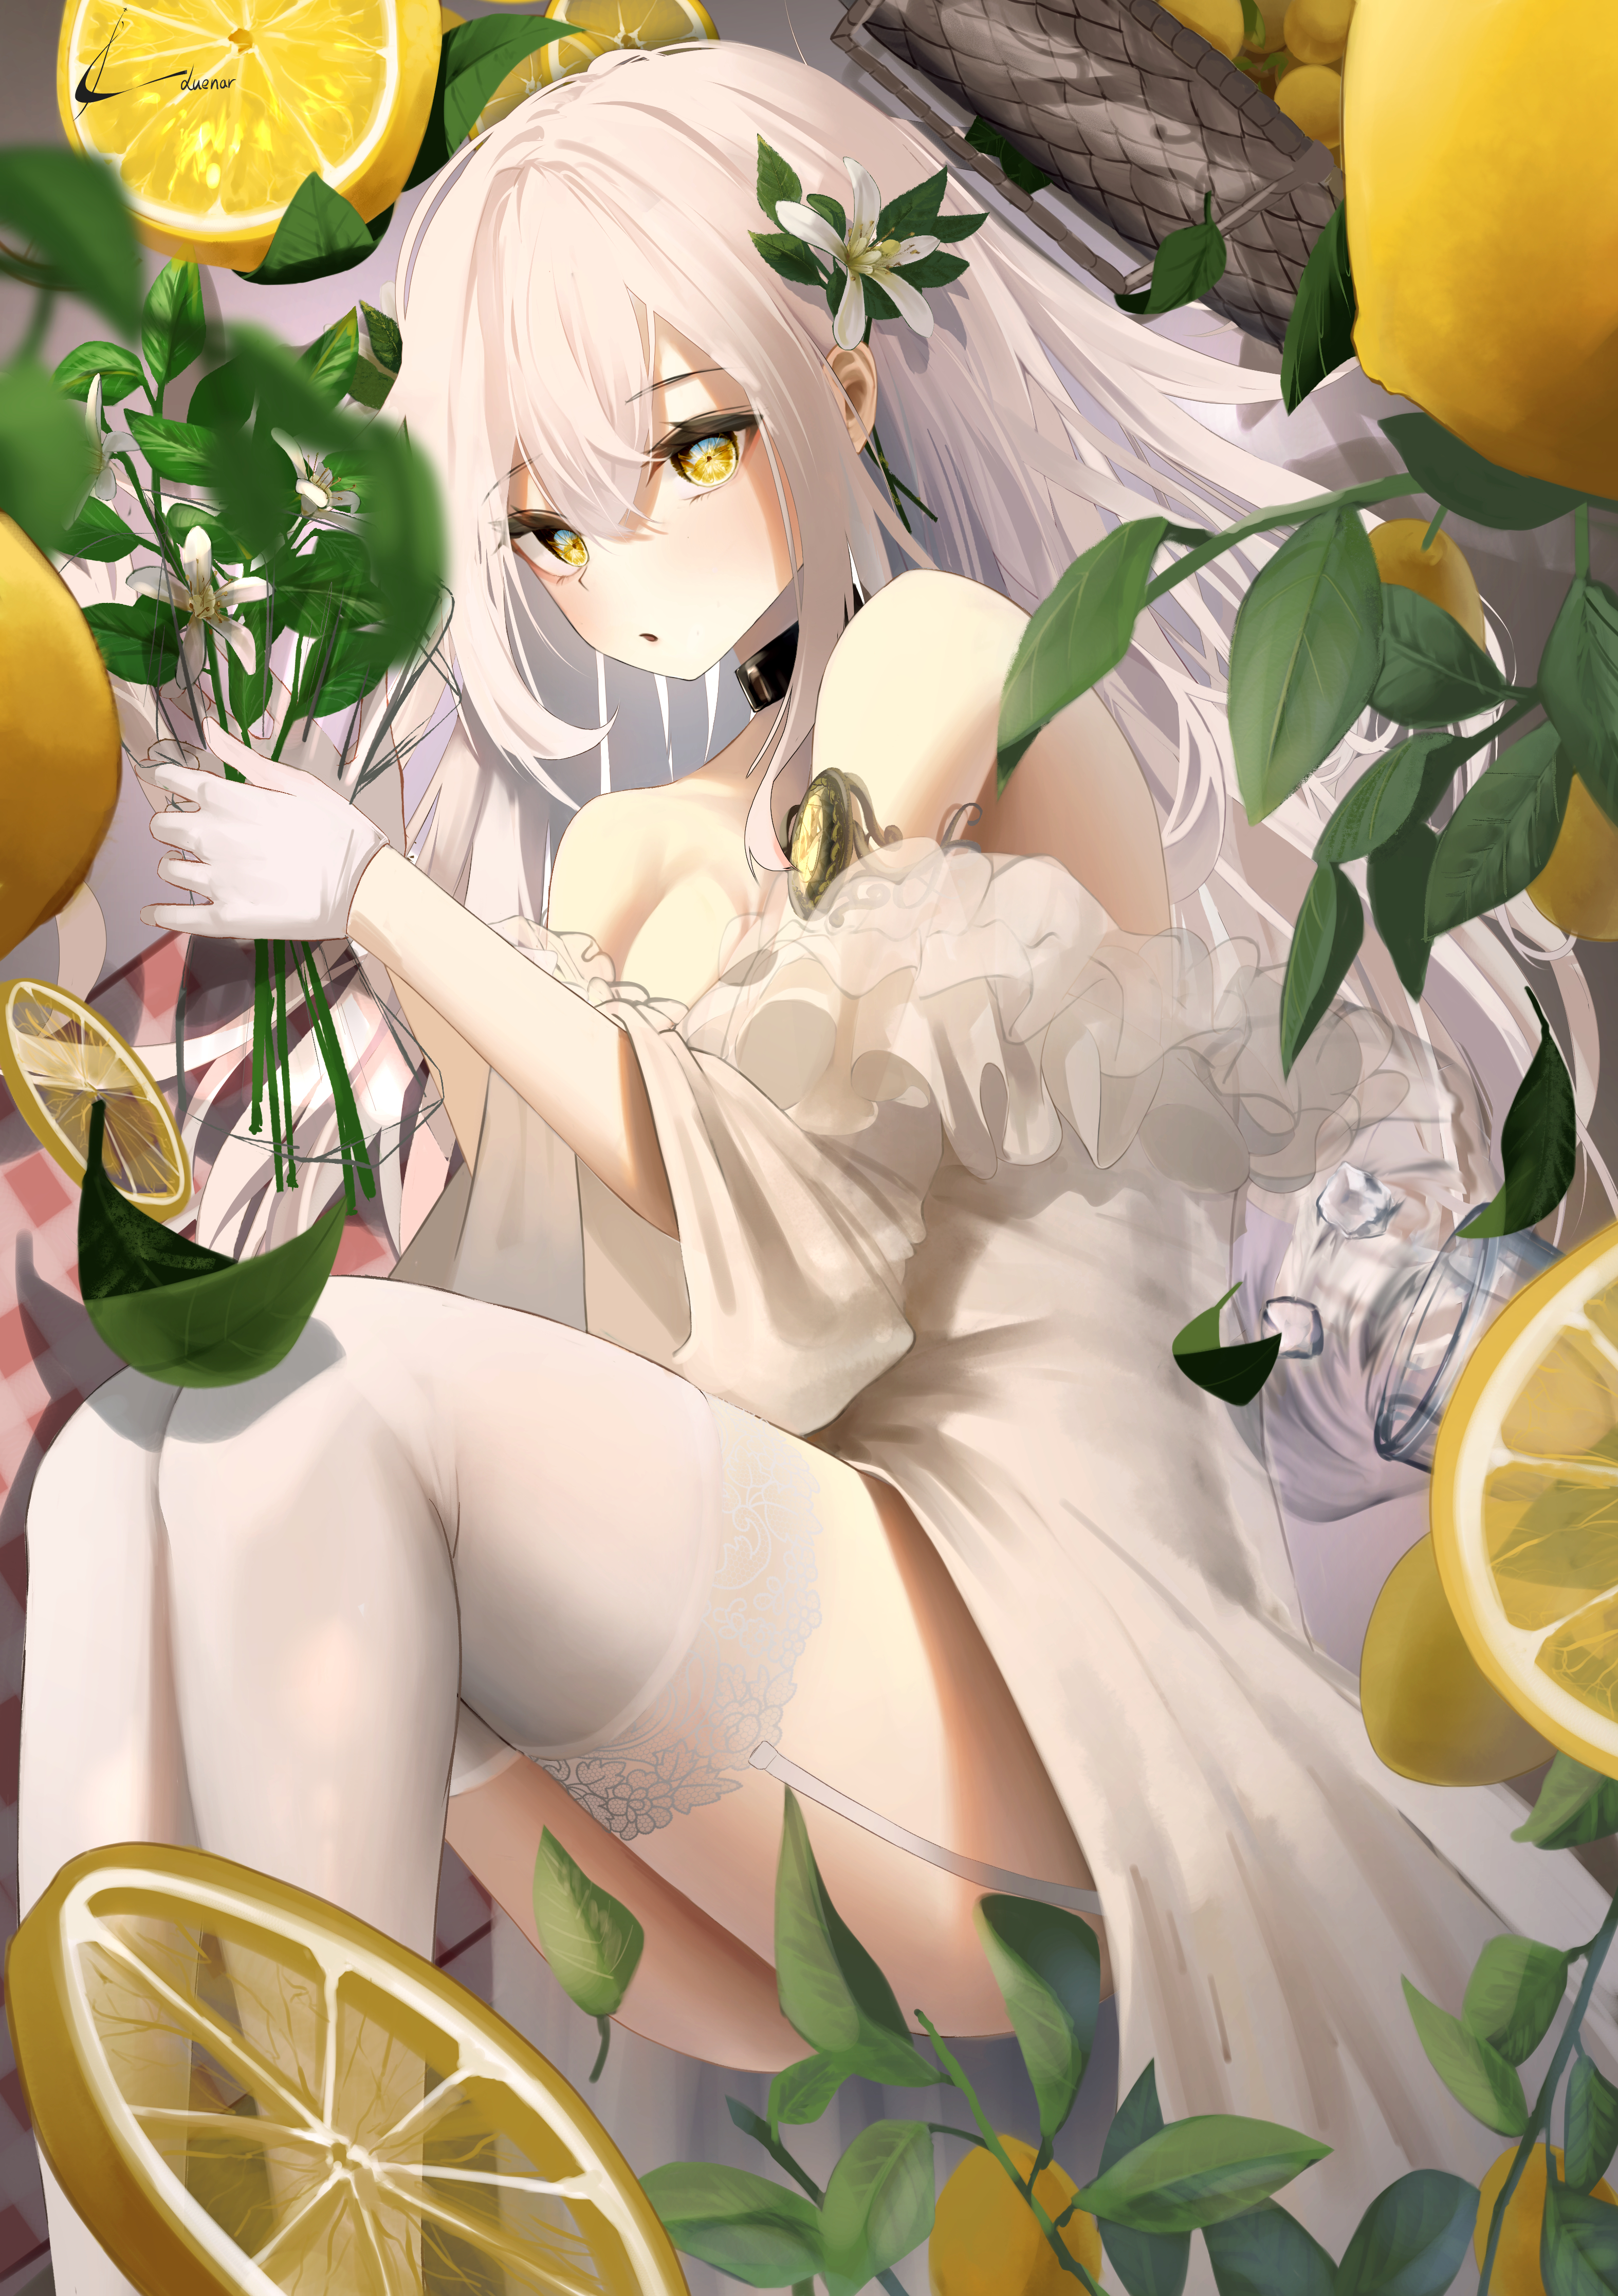 Anime 3148x4467 anime girls lemons choker white hair gloves fruit leaves flower in hair